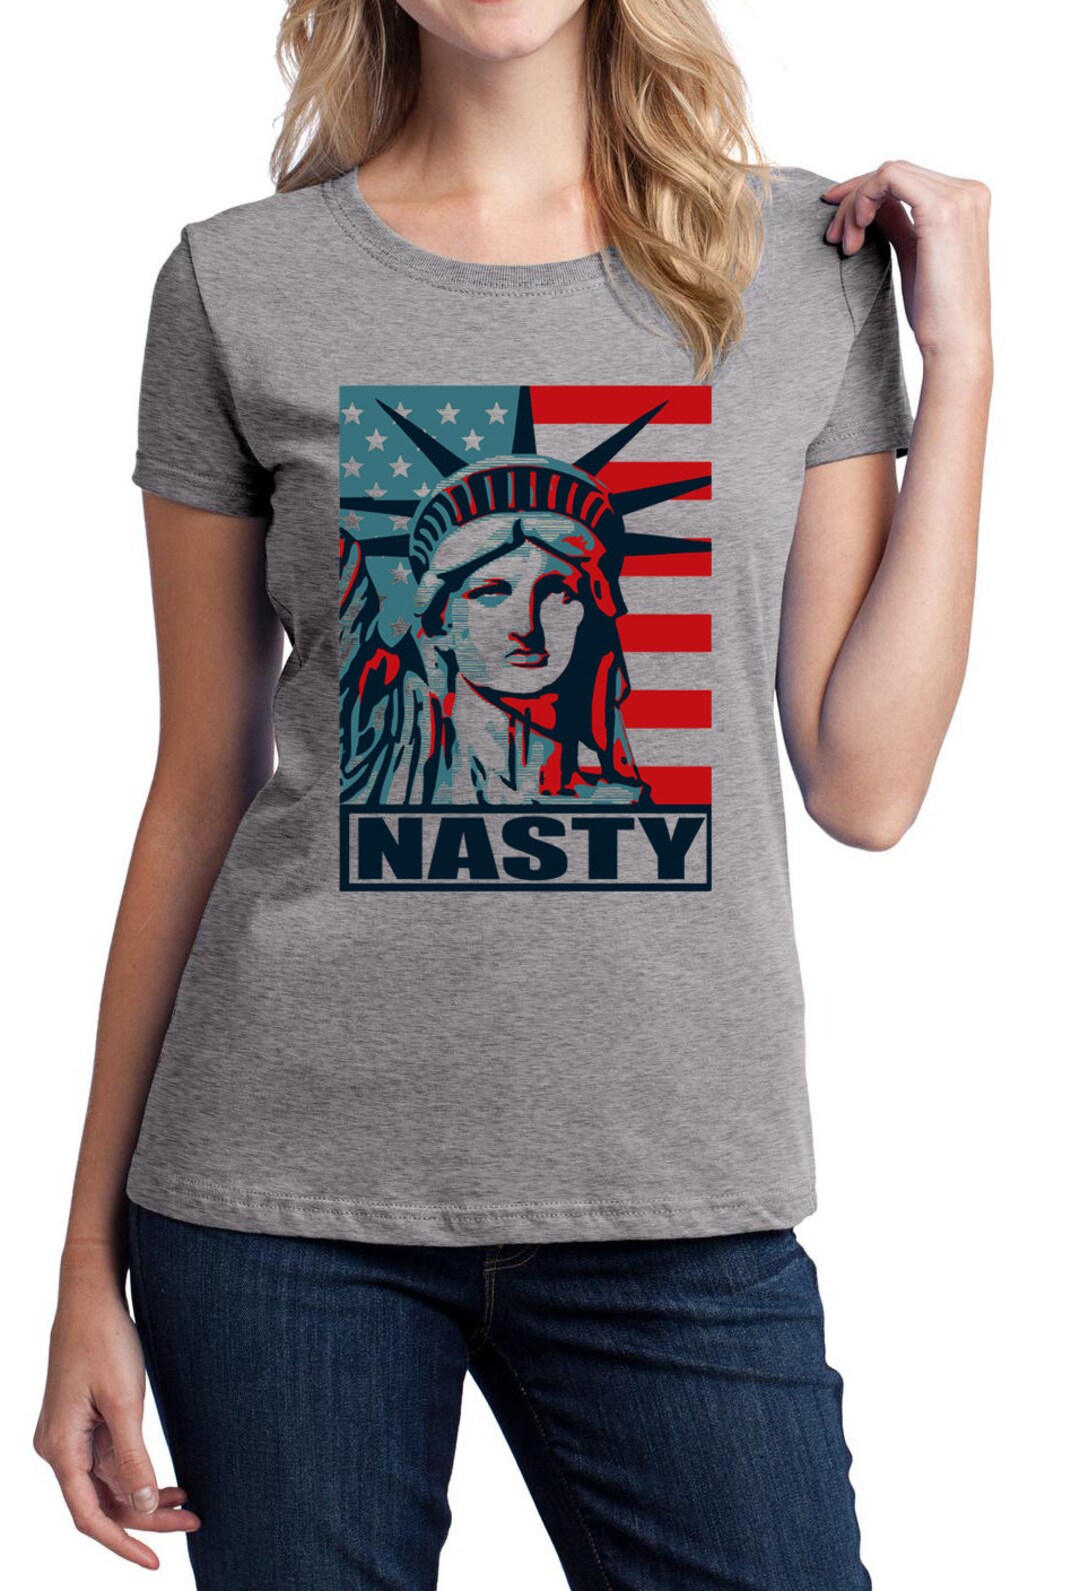 Women's March T-shirt Nasty Women T Shirt Nasty President - Etsy